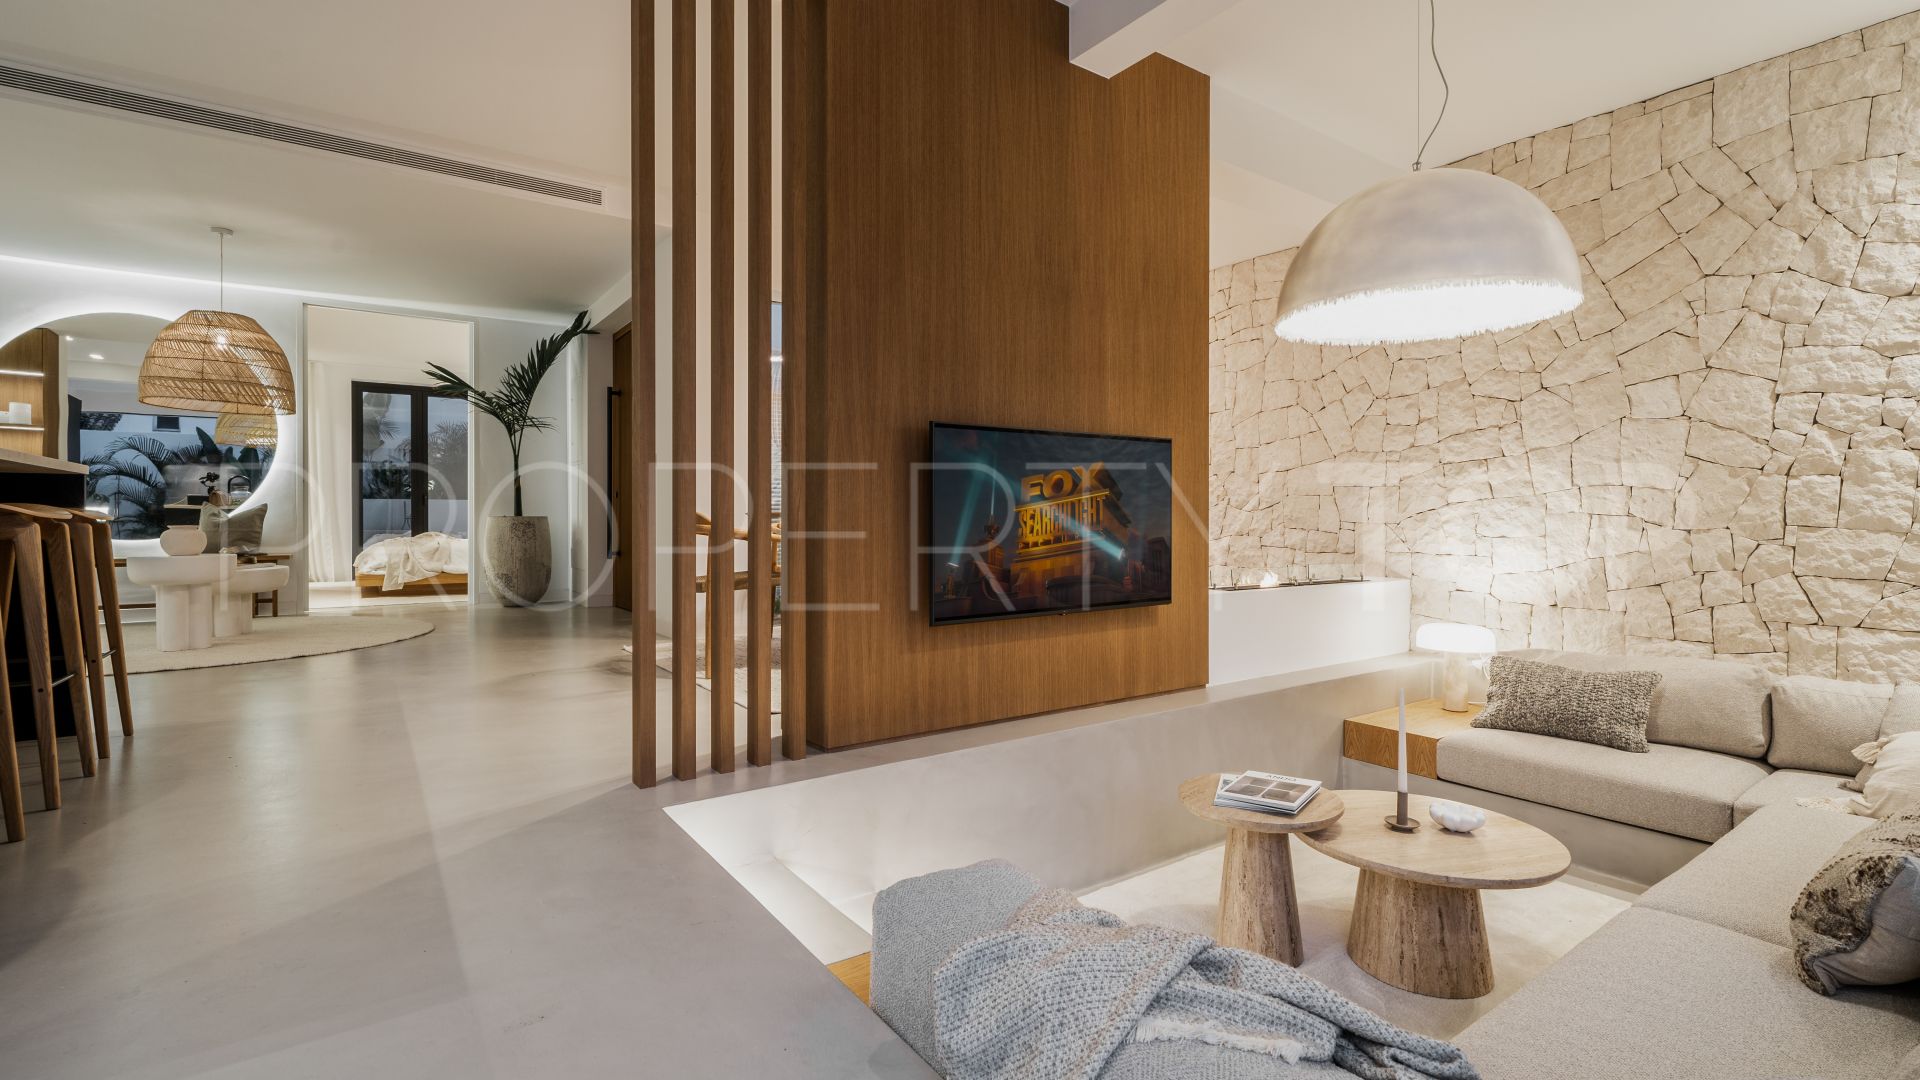 Nueva Andalucia, villa de 4 dormitorios en venta